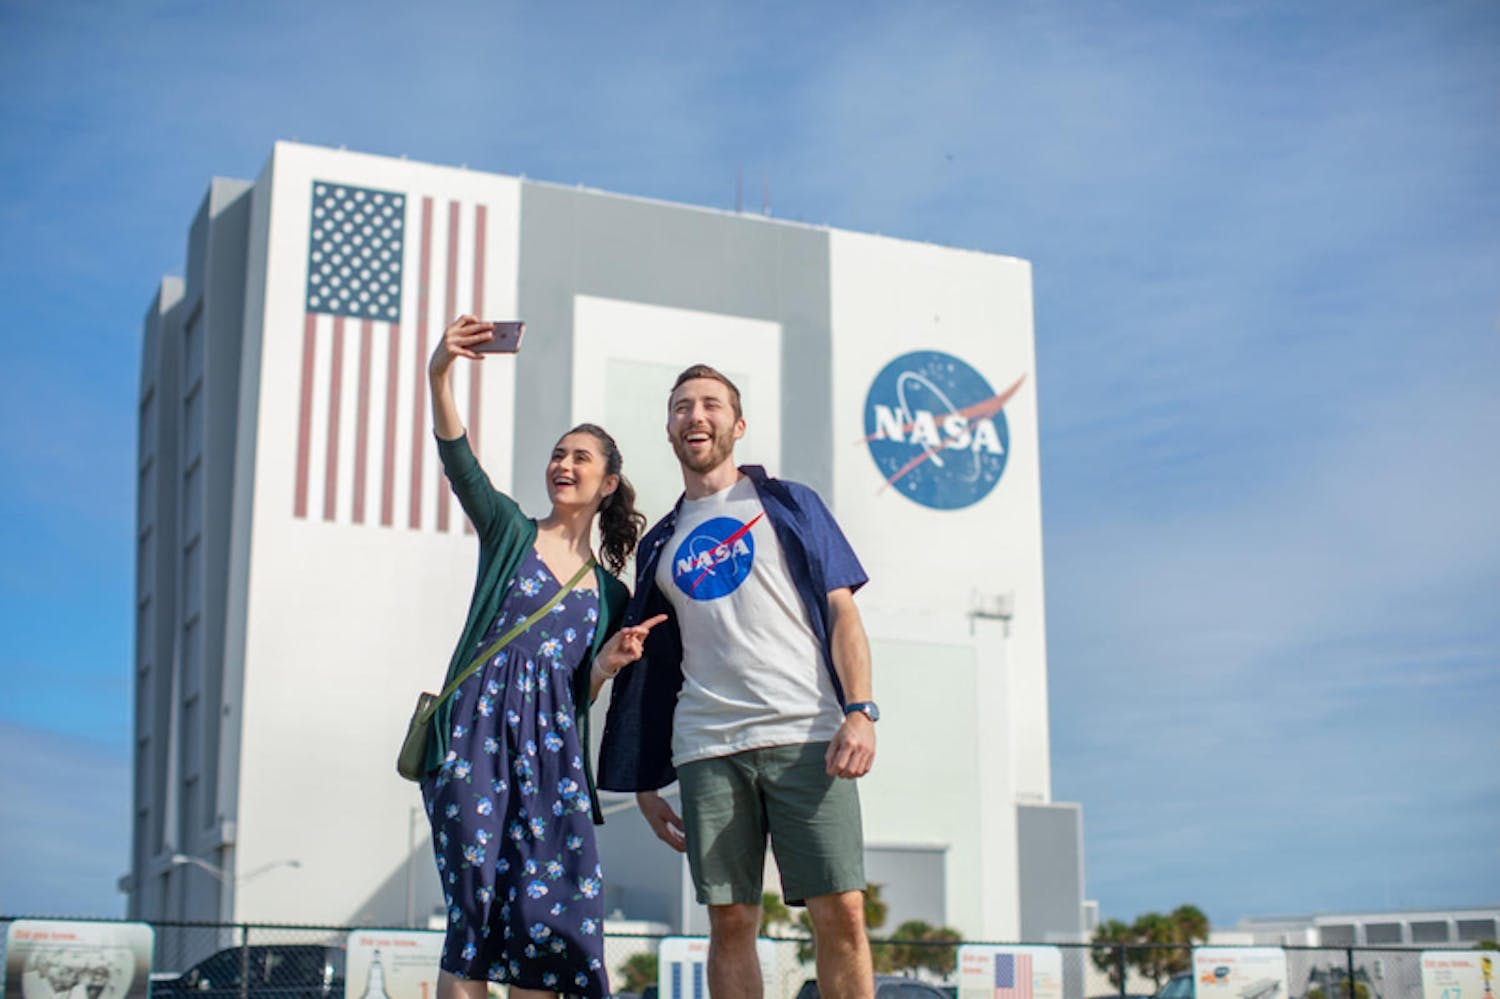 VIP-Erfahrung in kleiner Gruppe im Kennedy Space Center